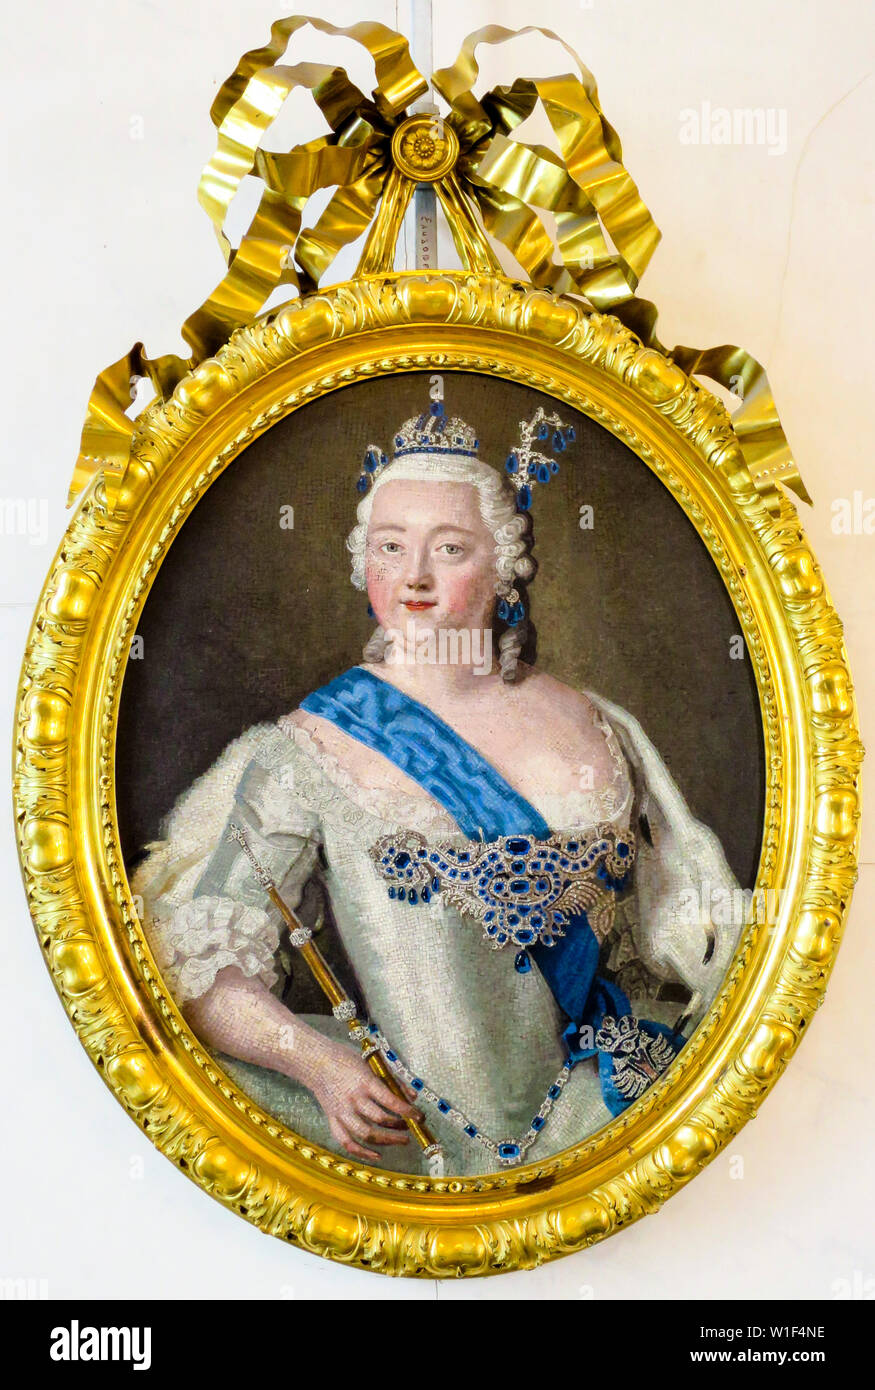 Luigi Alessandro,Valadier Cocchi, Micromosaic ritratto di imperatrice Elisabetta Petrovna, ritratto dipinto, 1750 Foto Stock